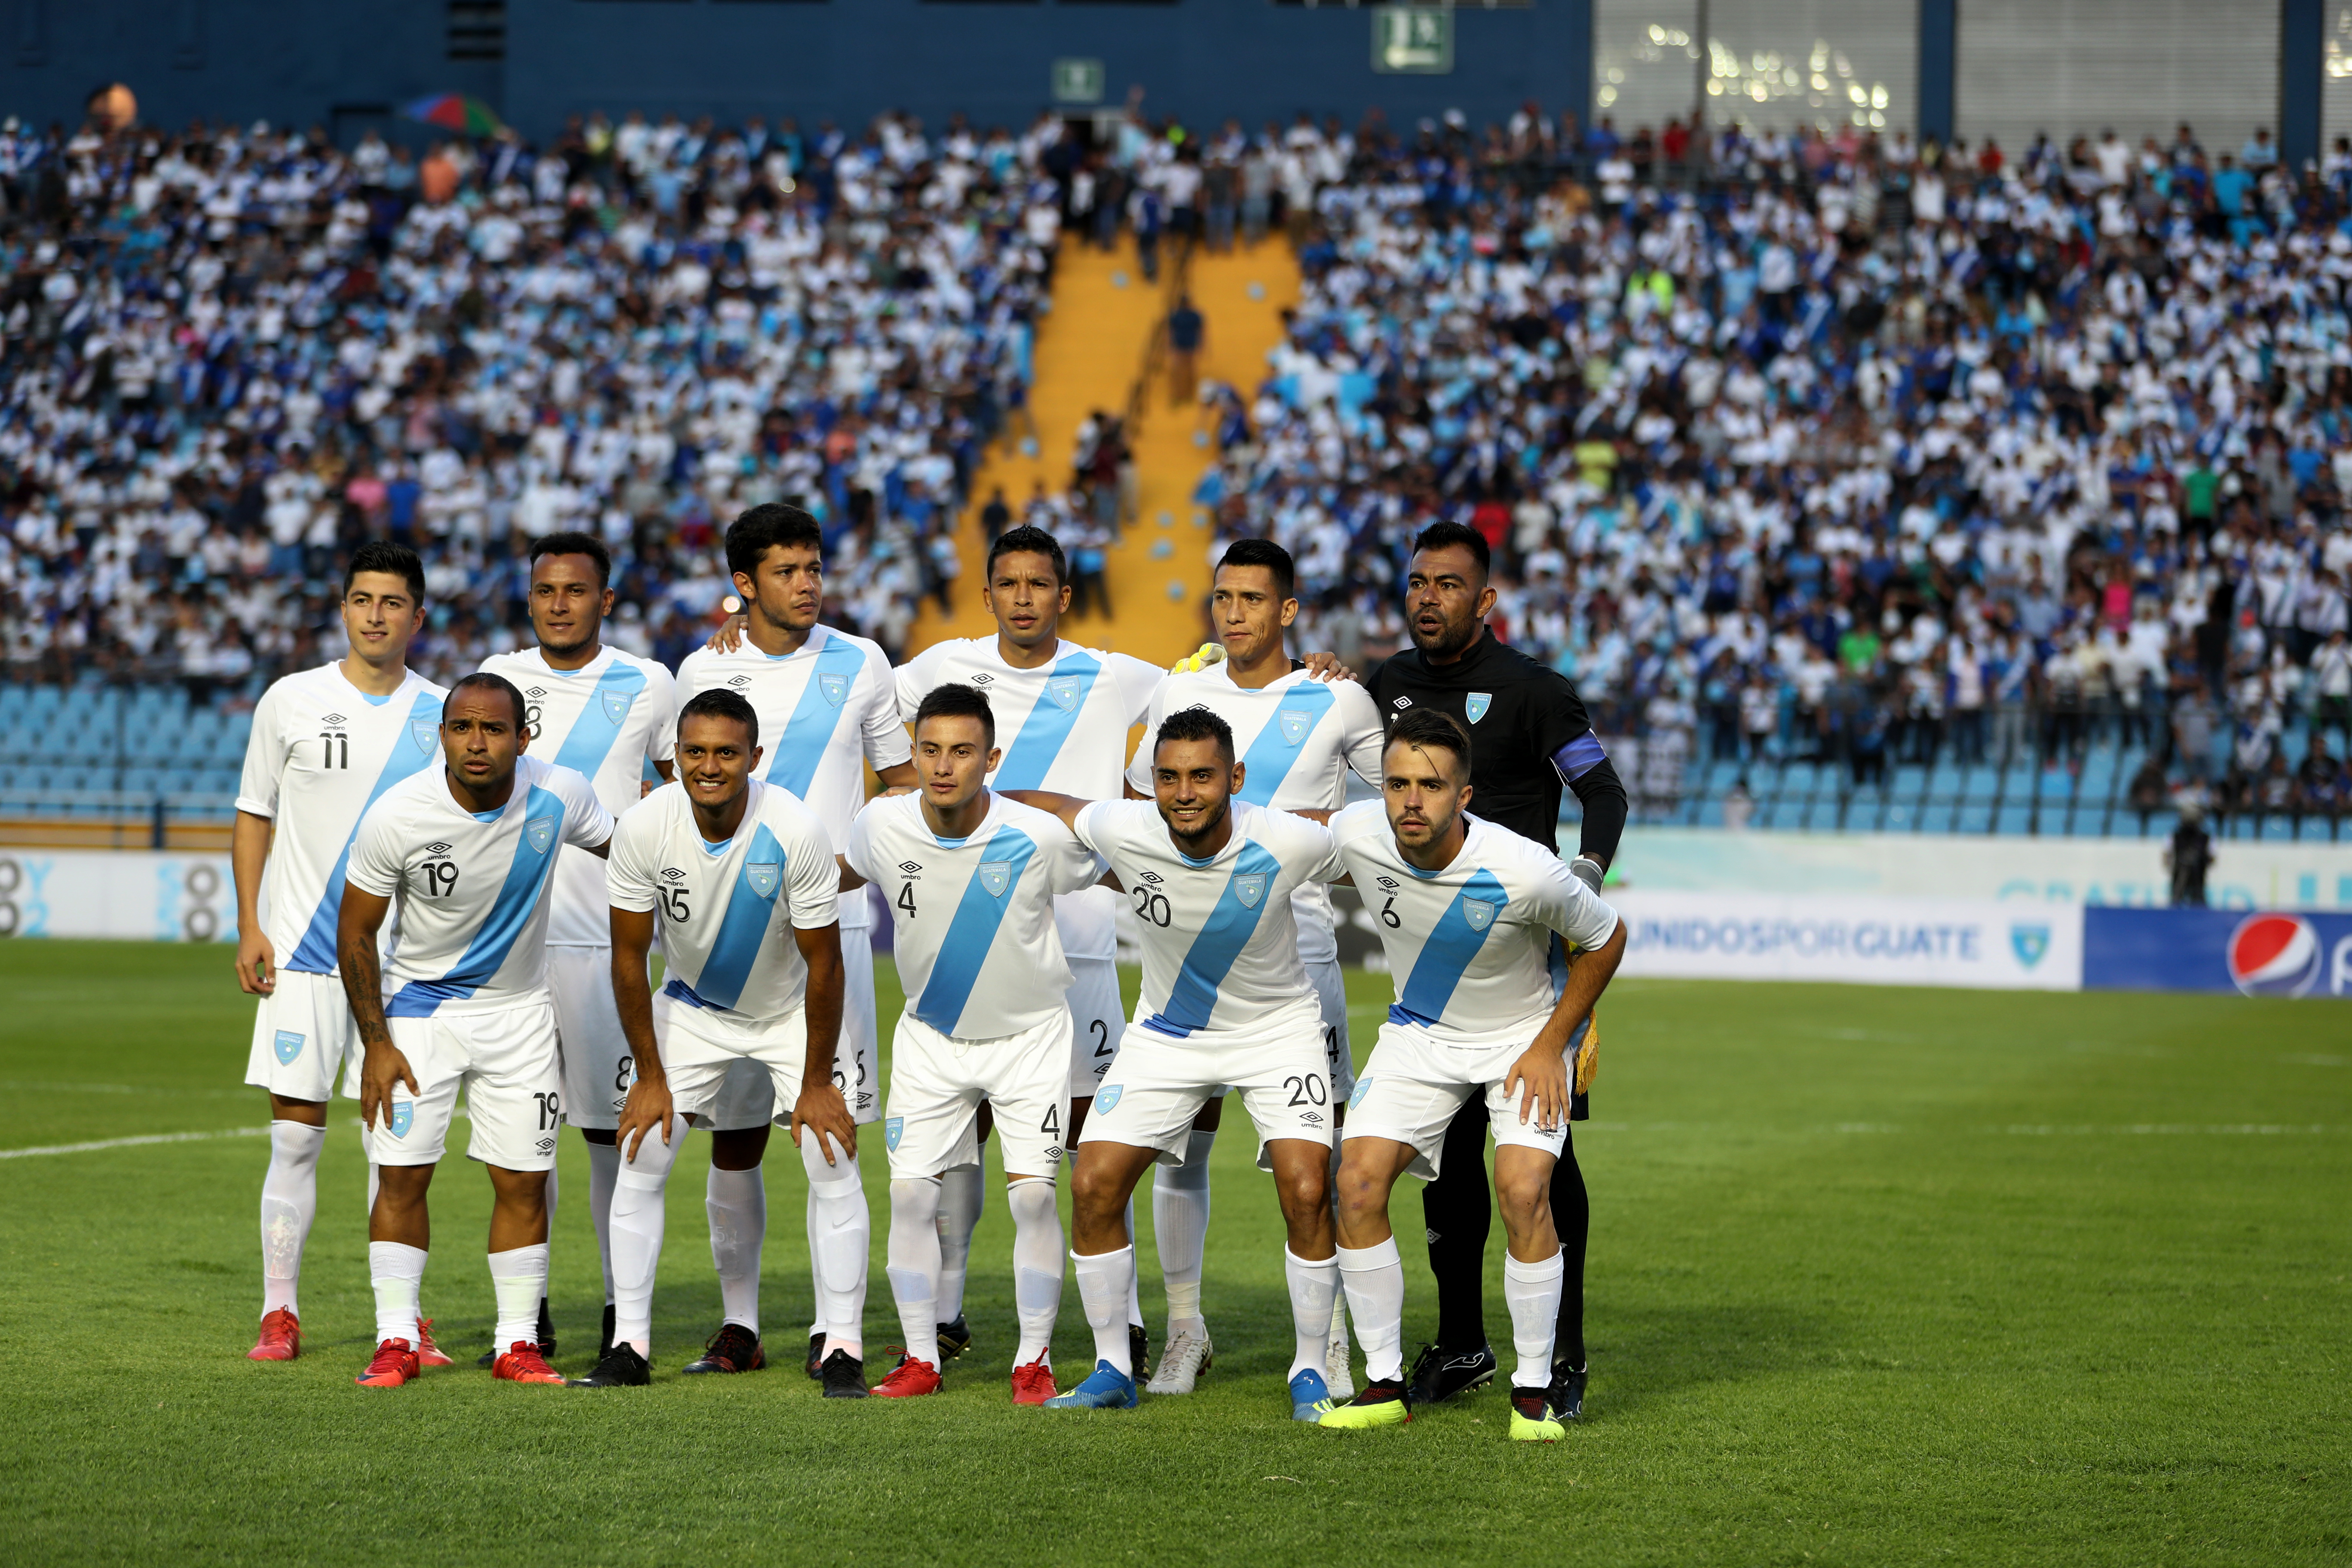 La Selección Nacional de Futbol tuvo que esperar casi dos años para disputar un partido oficial (Foto Prensa Libre: Edwin Fajardo)